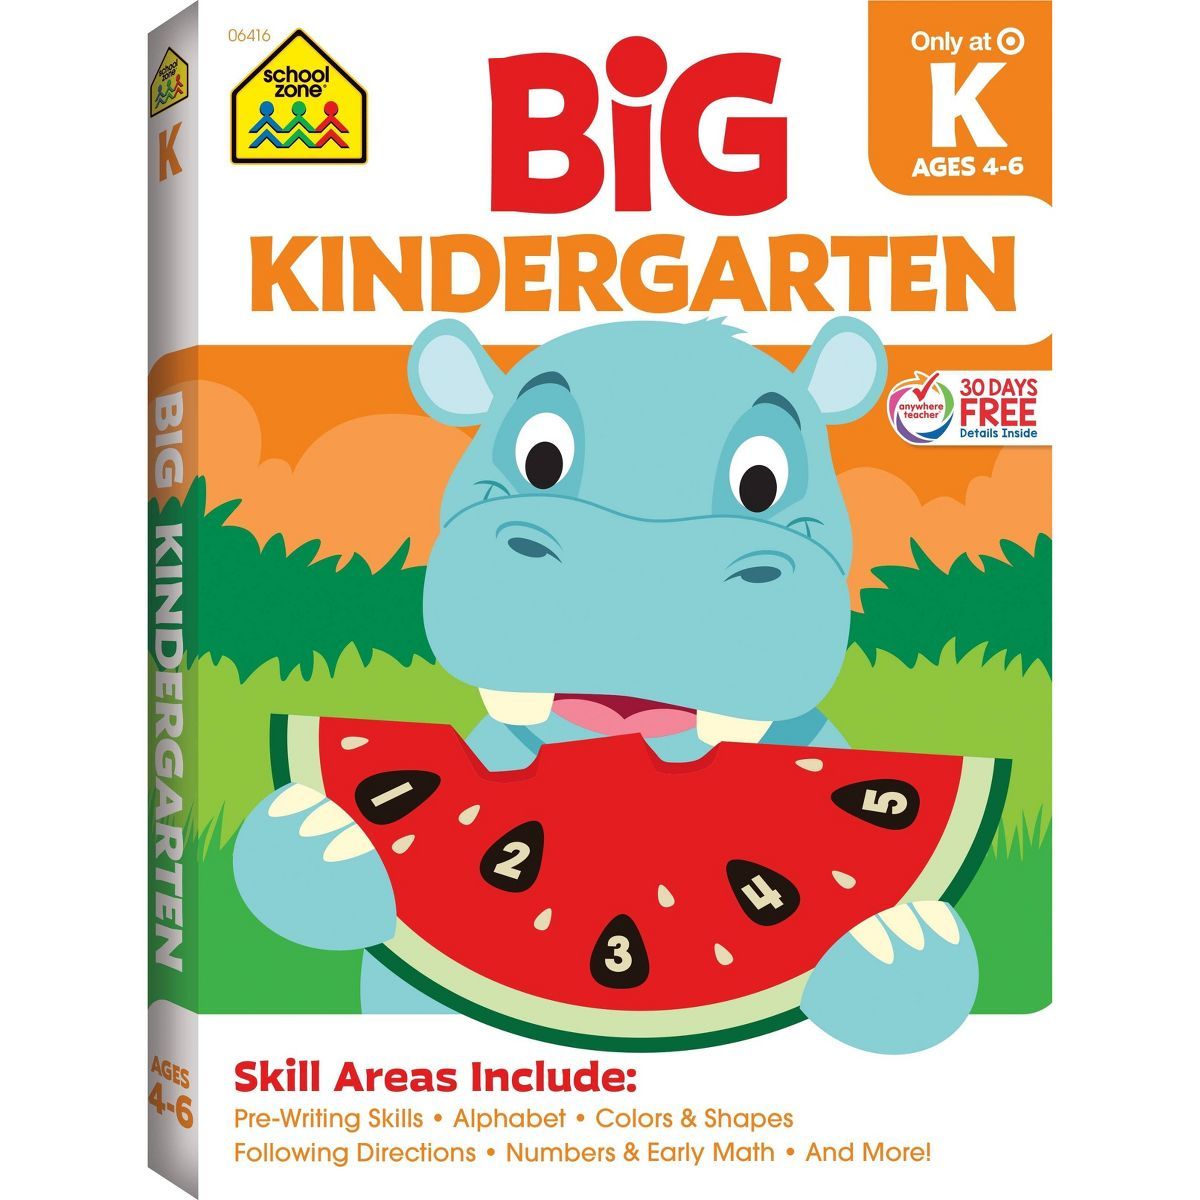 Big Kindergarten Workbook - Target Exclusive Edition - by School Zone (Paperback) | Target